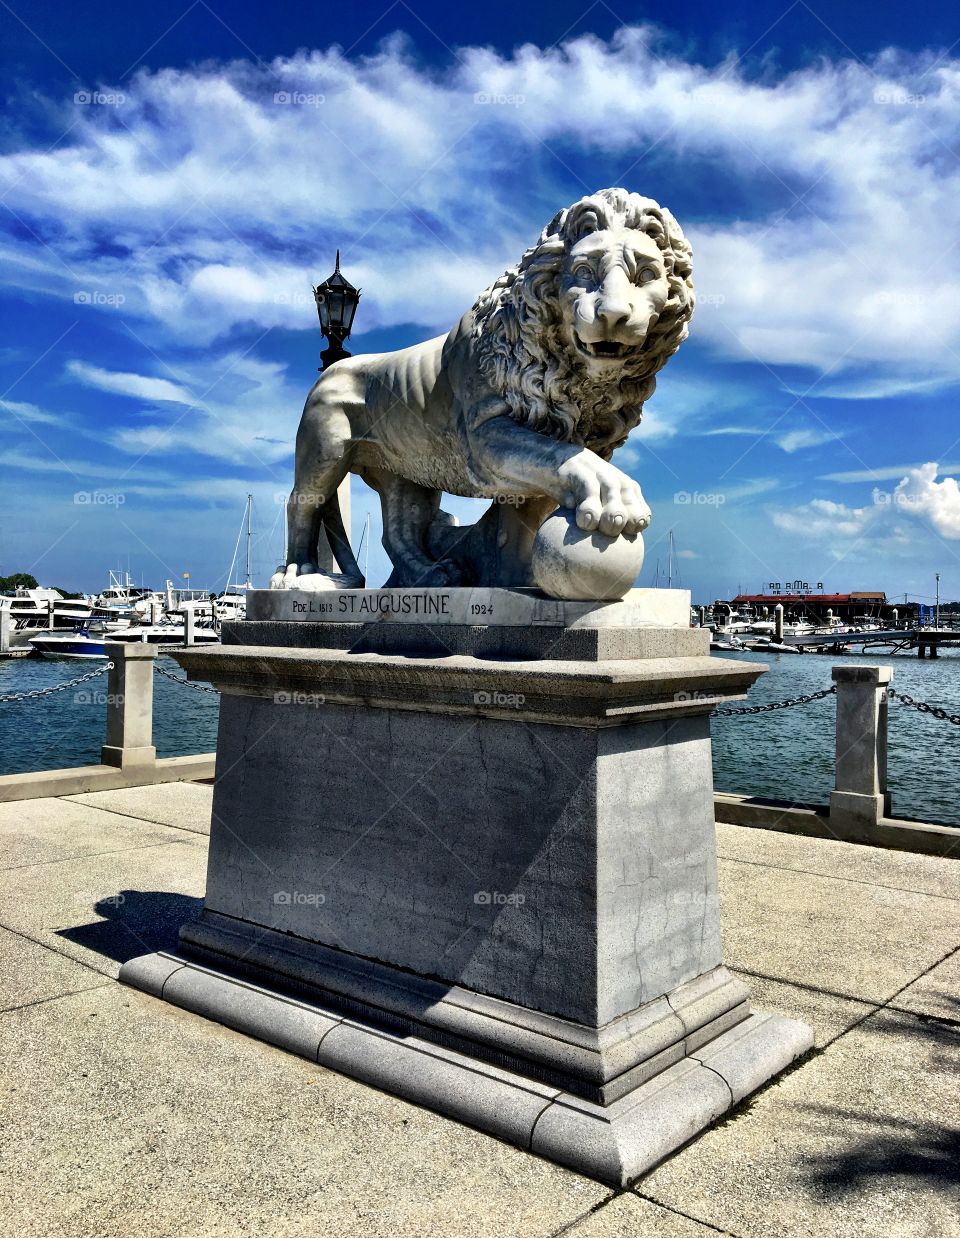 El puente de los leones, St. Augustine, FL